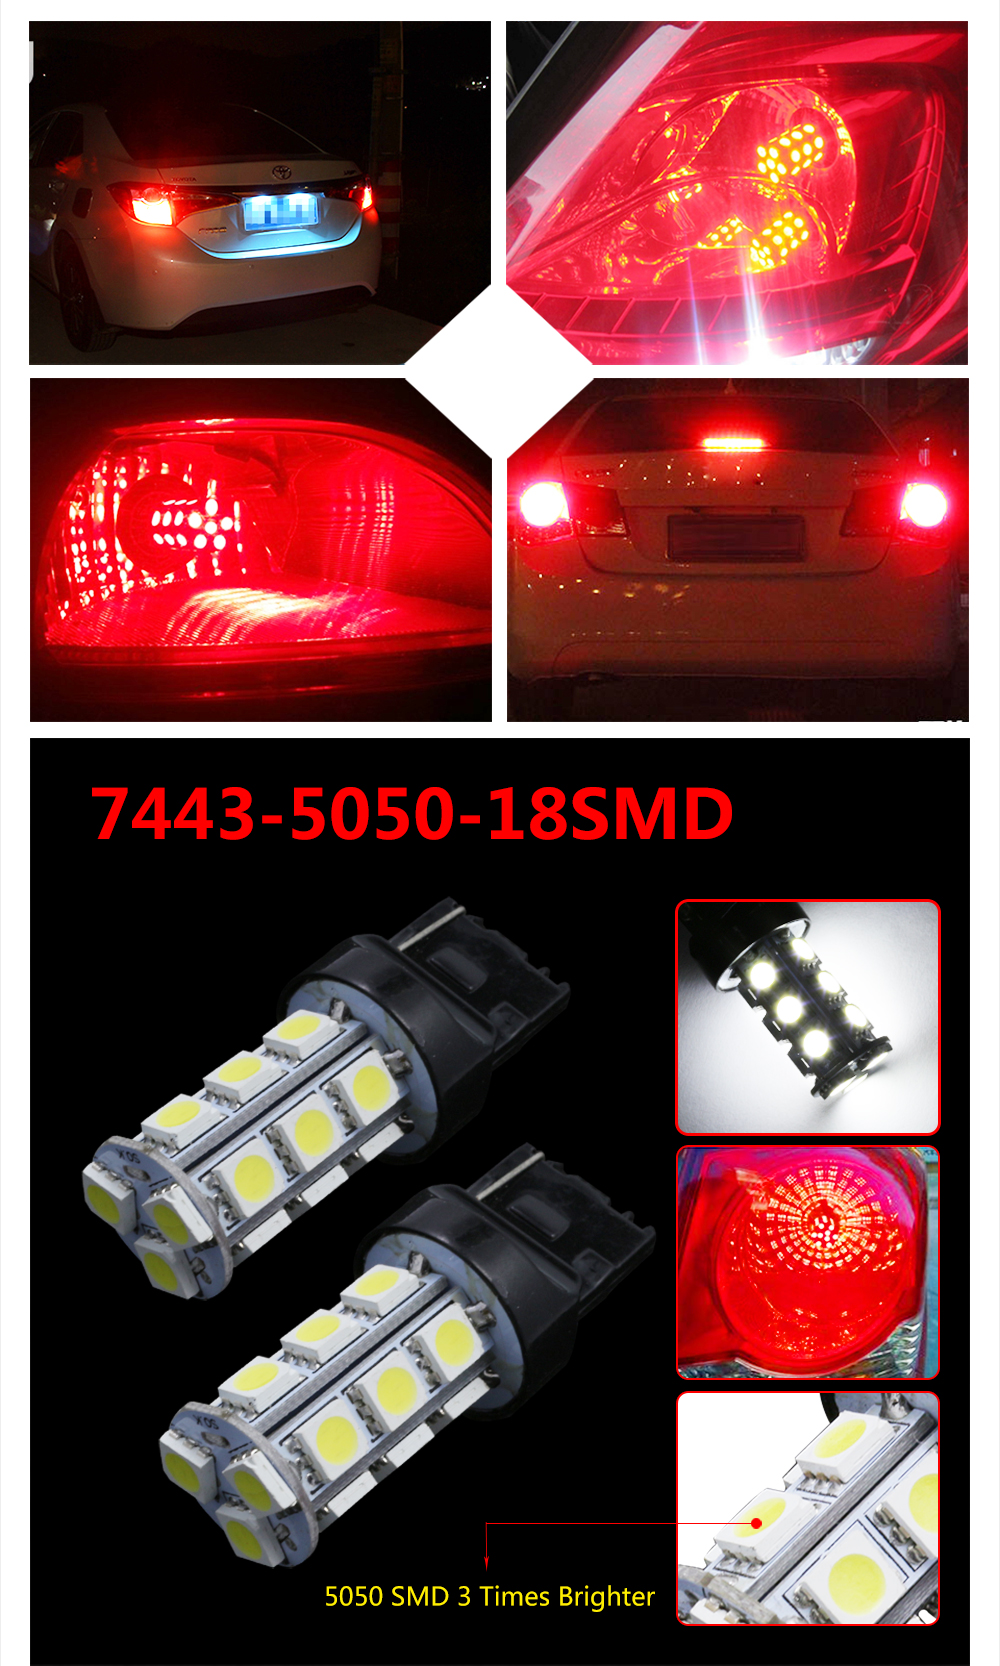 10PCS T20 7440 7443 White 18-SMD 5050 Reverse Brake/Stop/Turn Tail Back Up LED Light Bulb